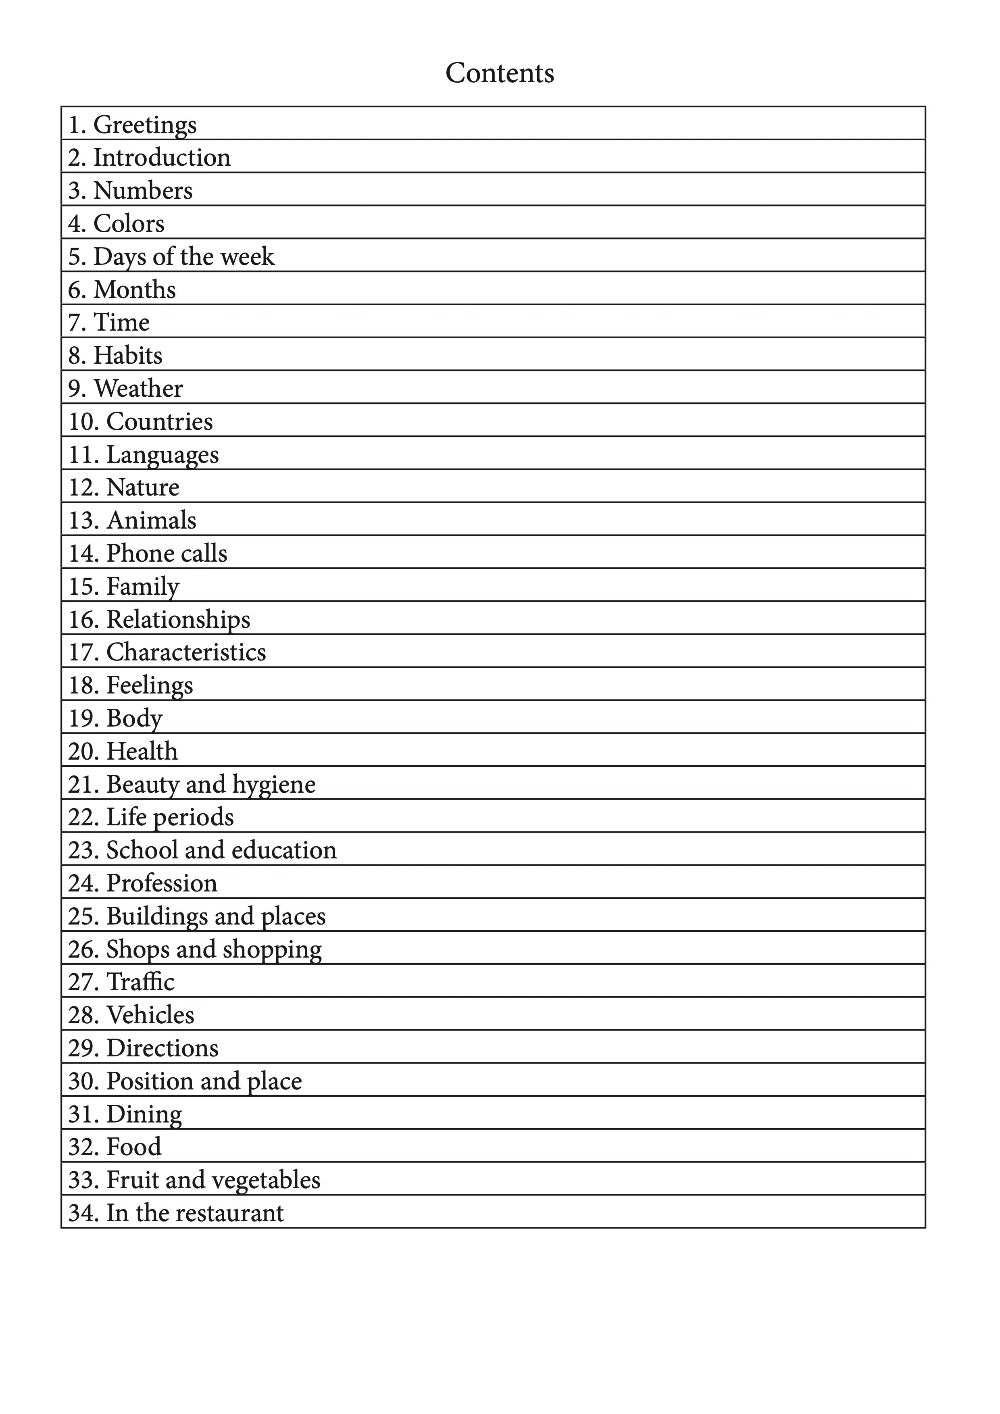 Kurmanji language learning notebook contents page 1